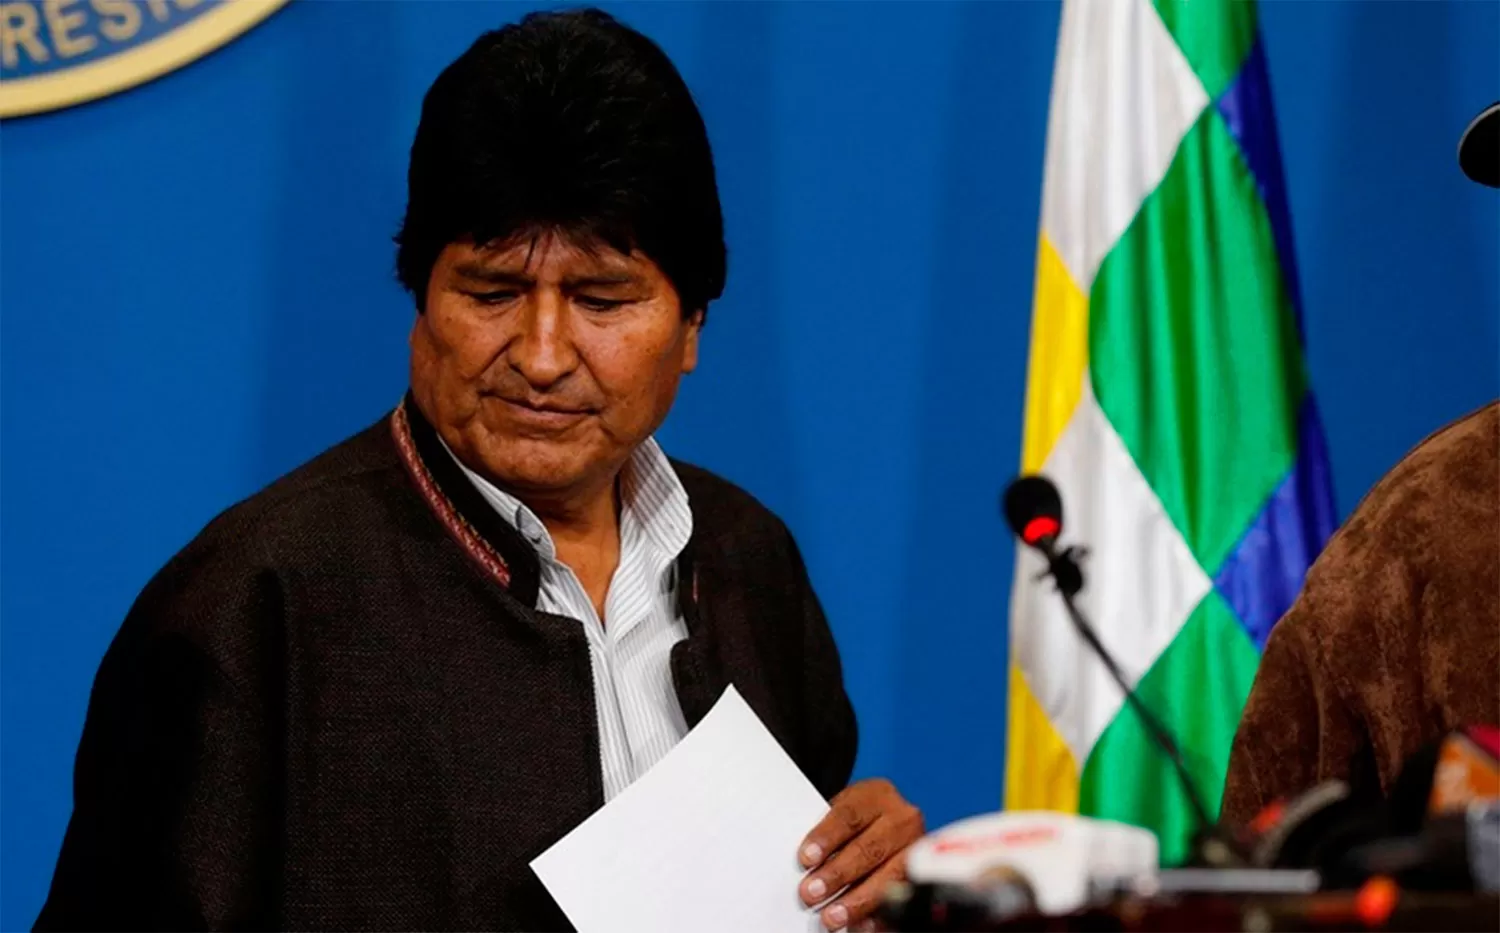 La policía boliviana negó que haya una orden para detener a Evo Morales